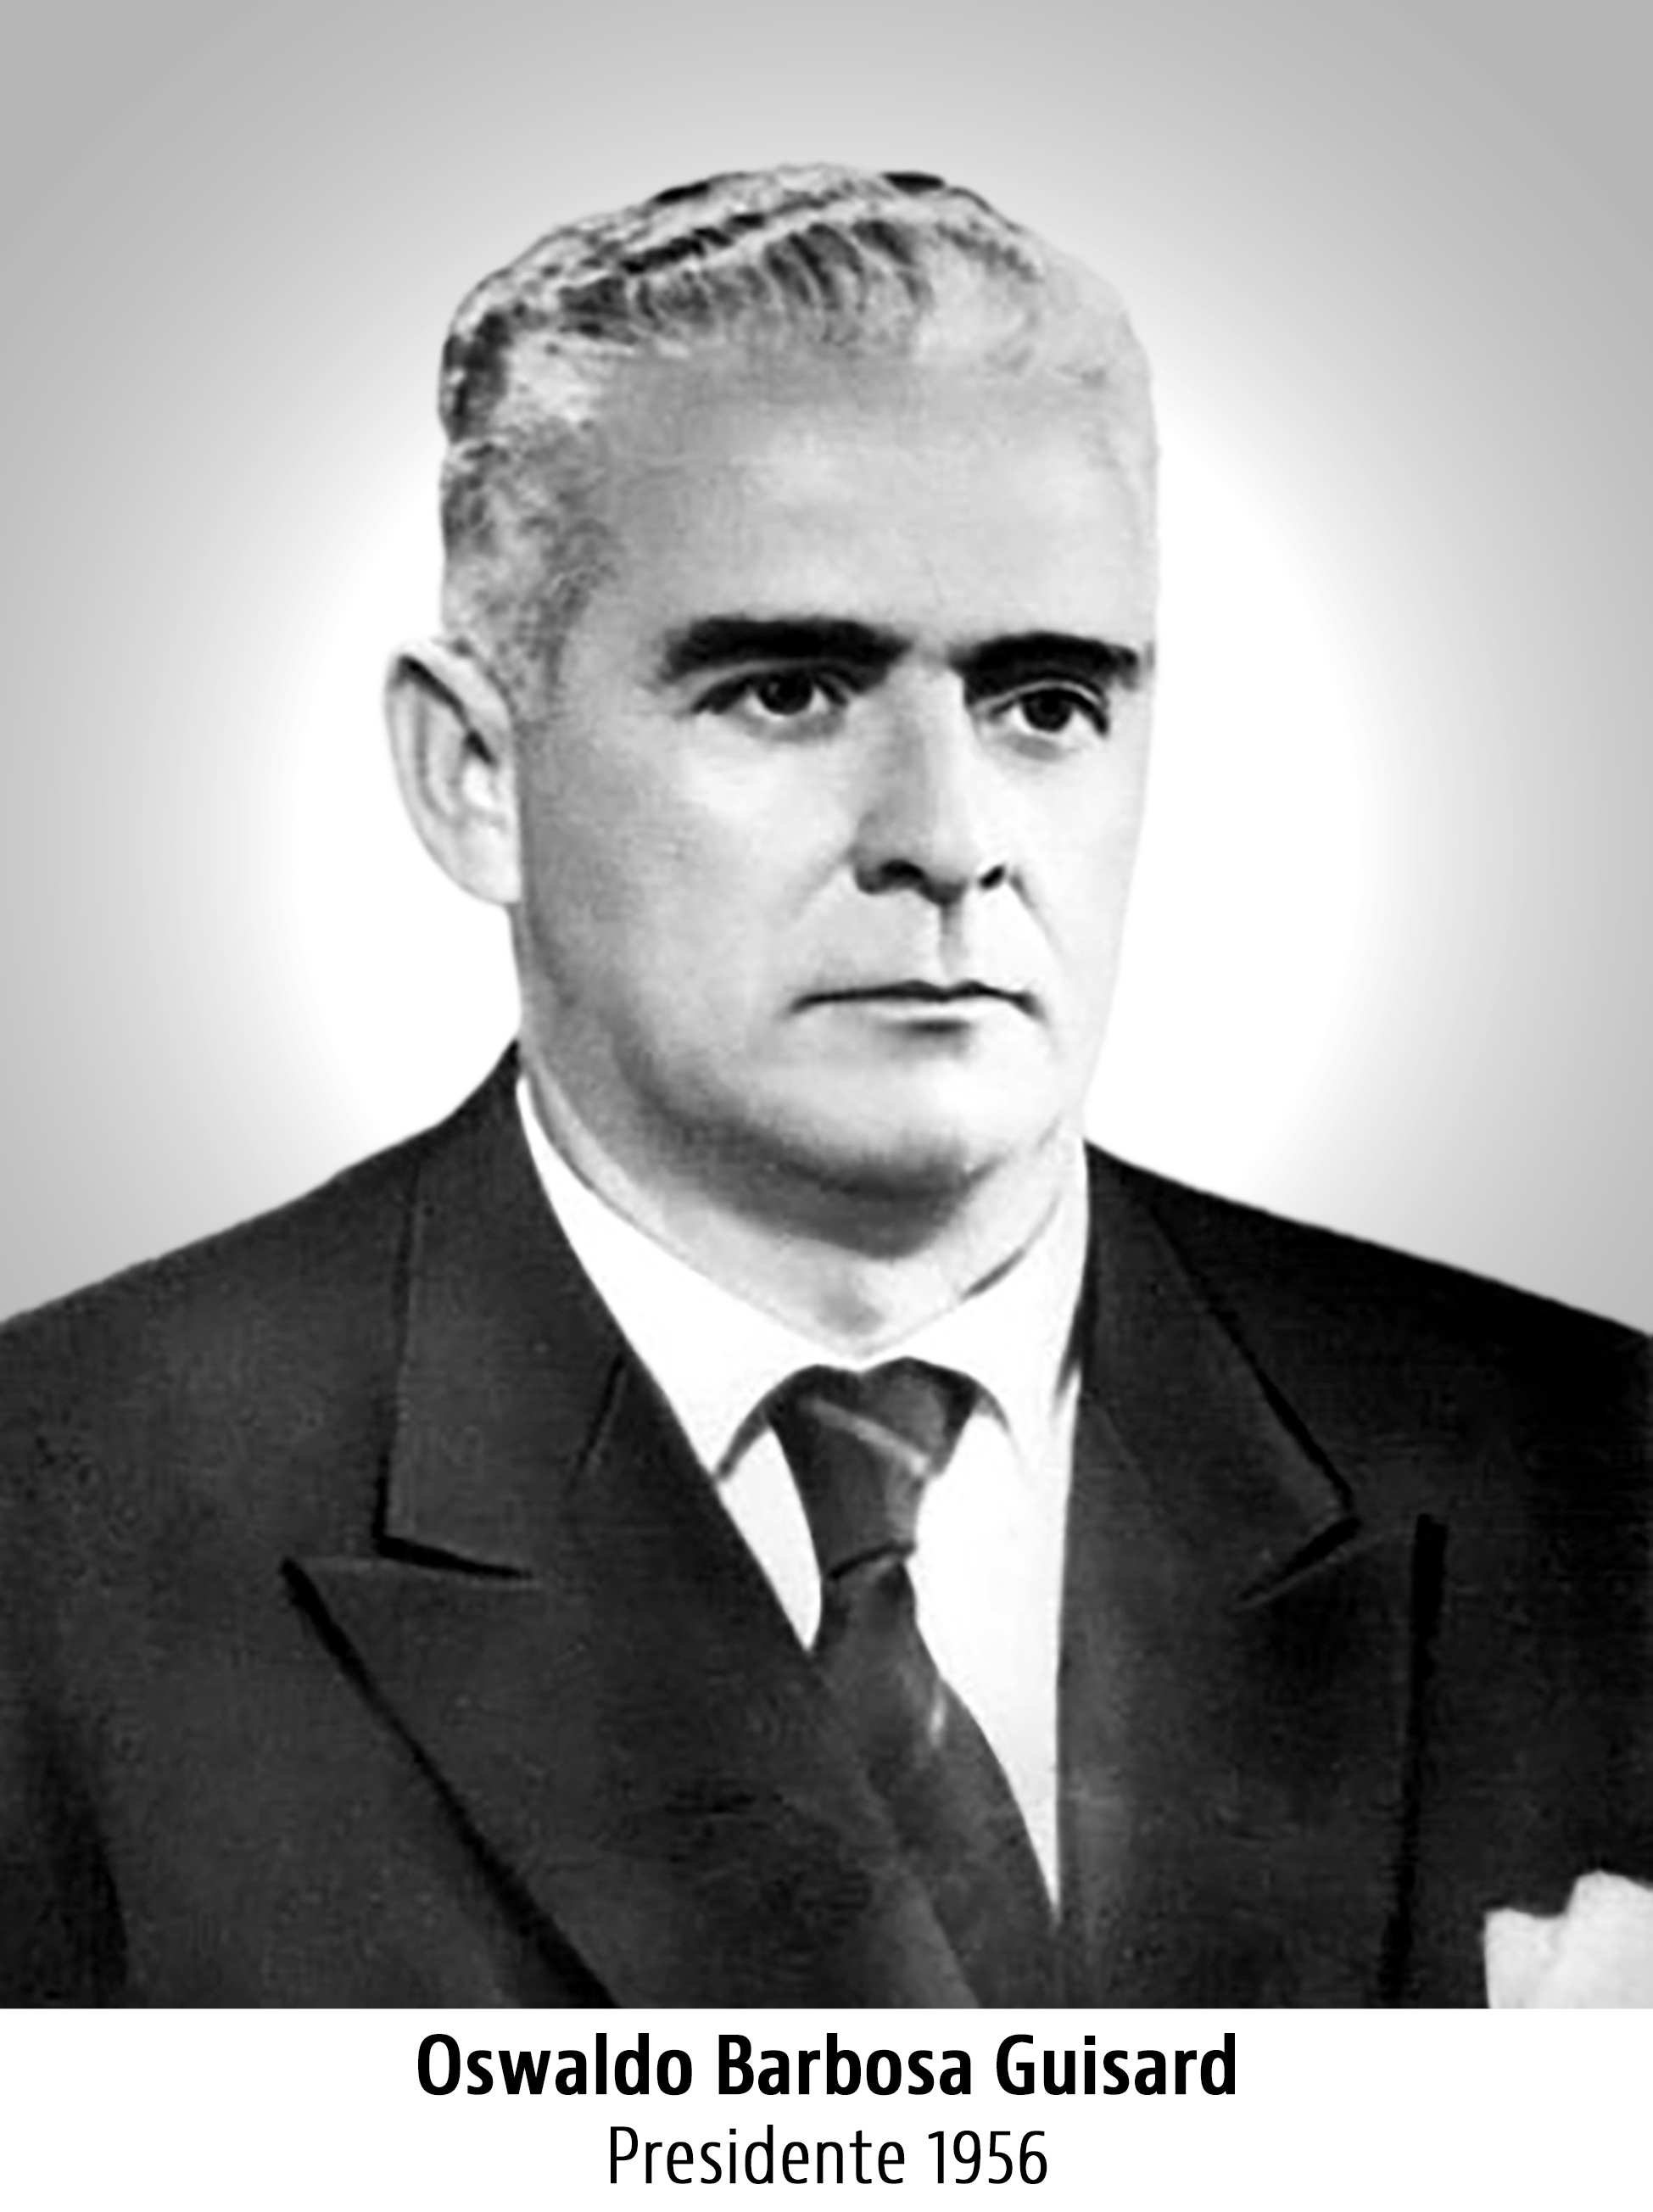 Oswaldo Barbosa Guisard